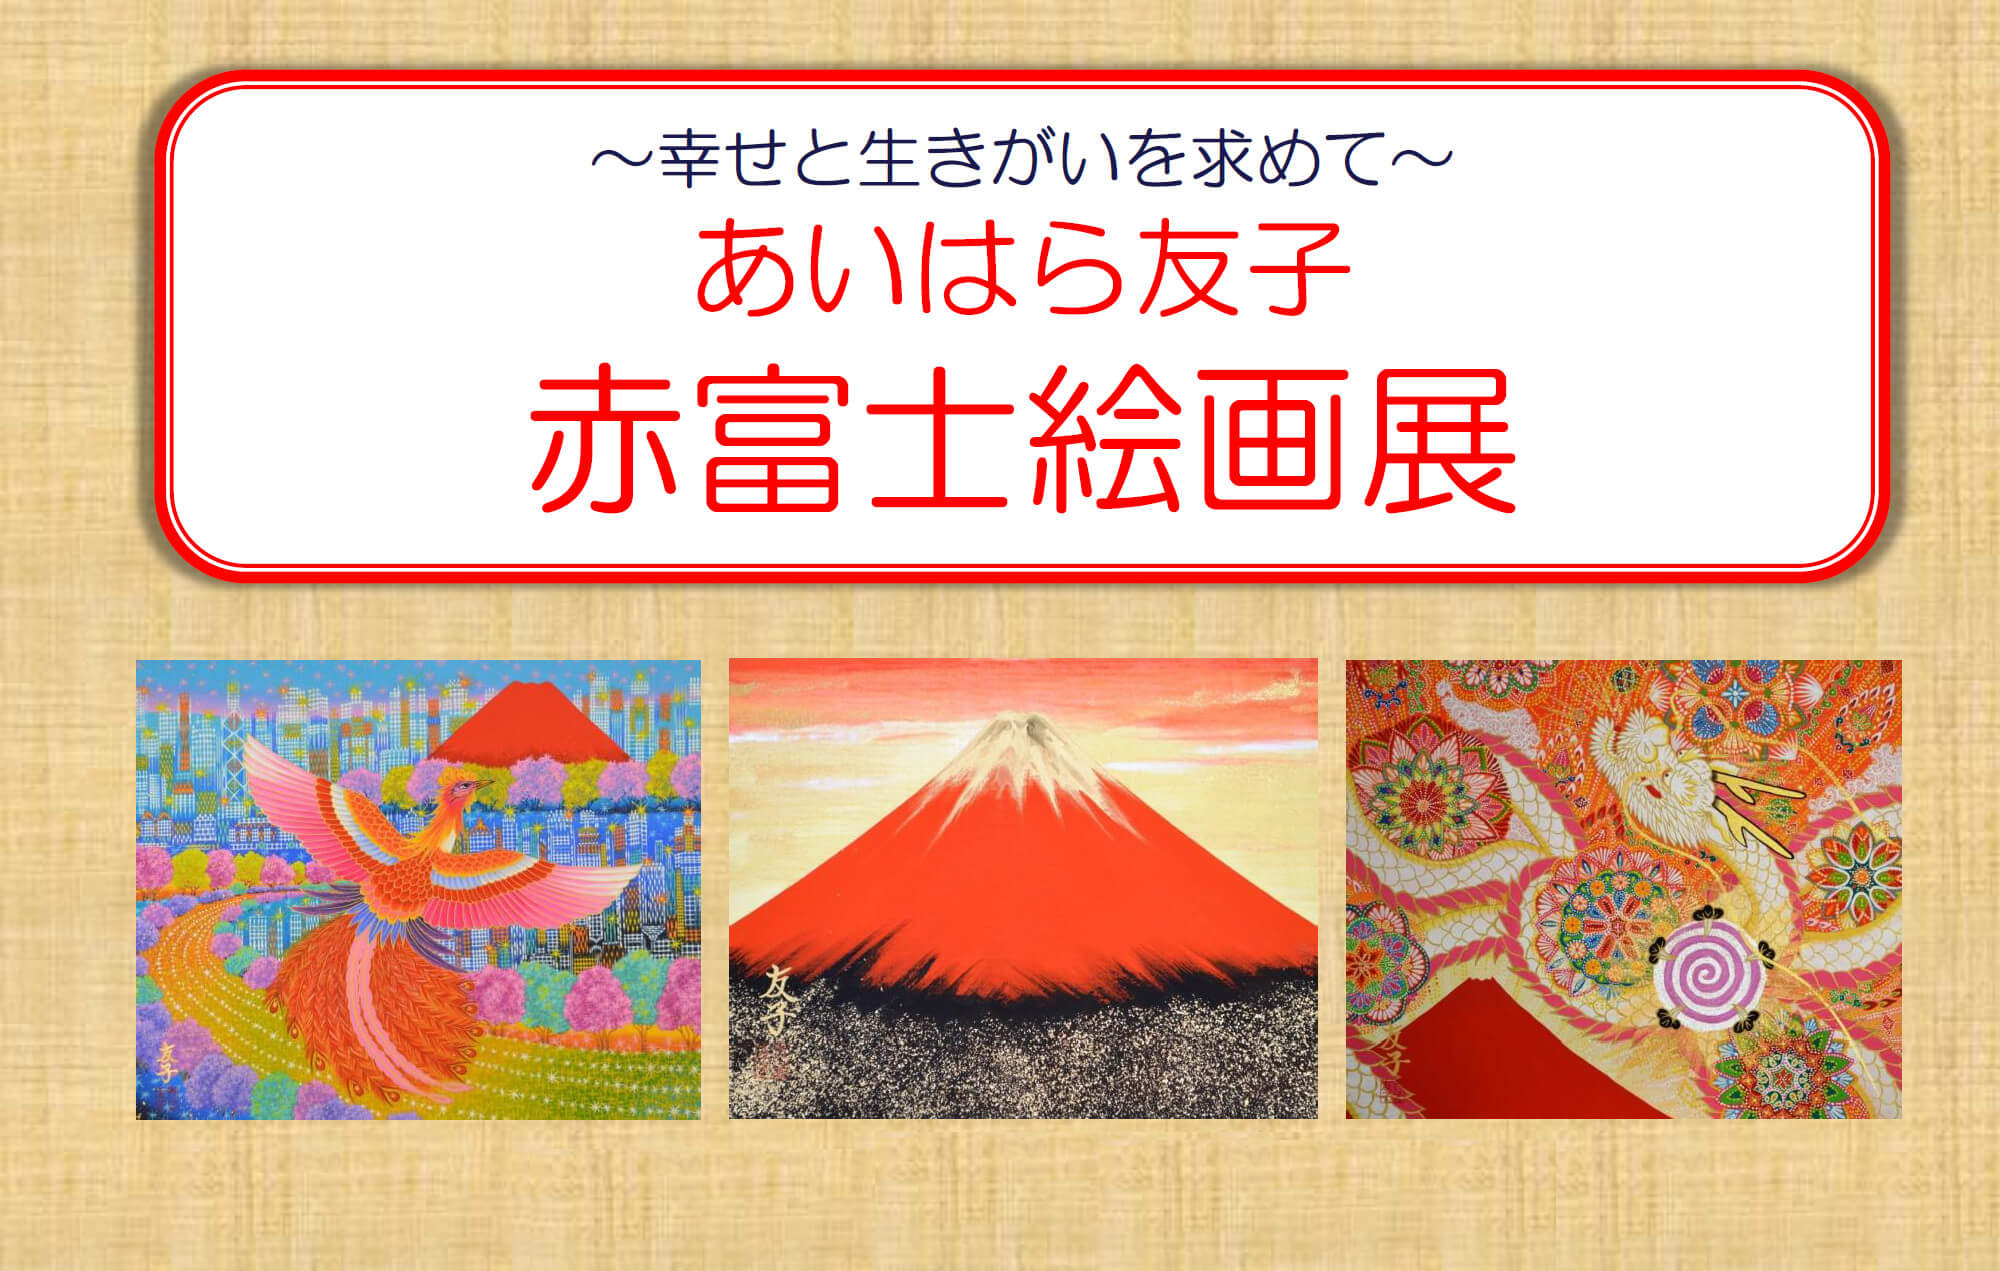 あいはら友子〉赤富士絵画展 | イベント情報 | 八木橋百貨店